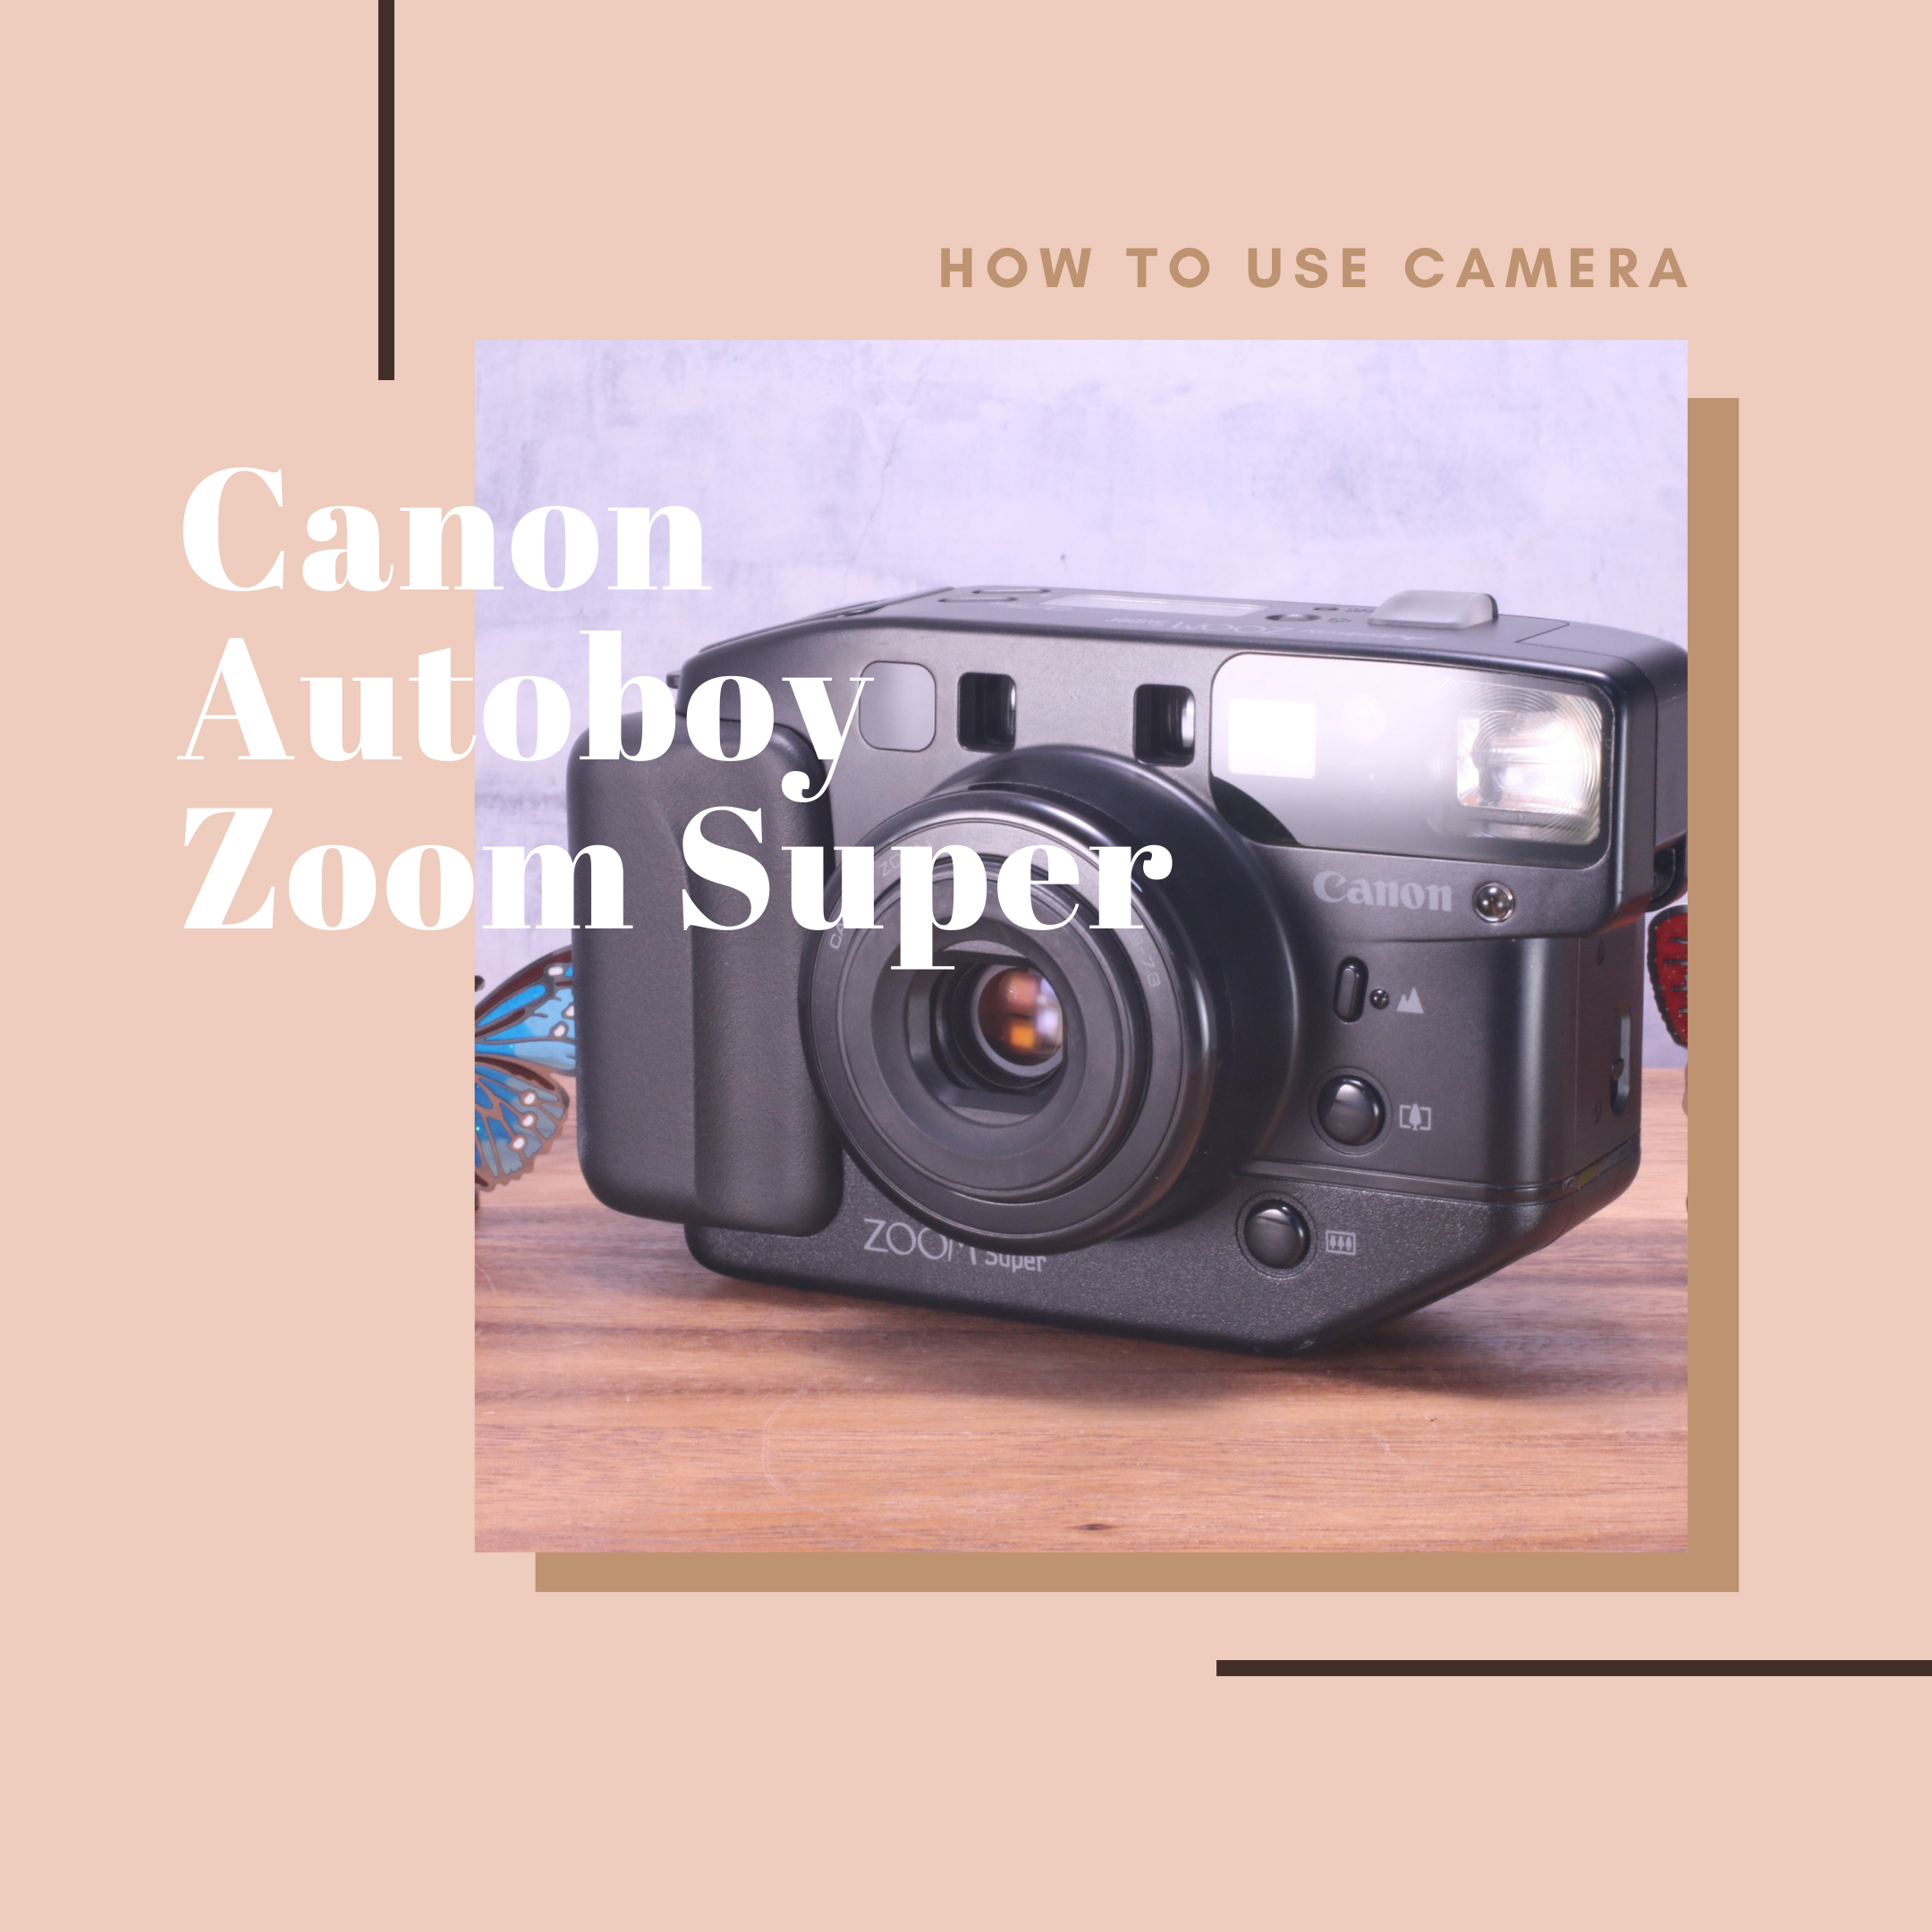 Canon Autoboy Zoom Super の使い方 | Totte Me Camera